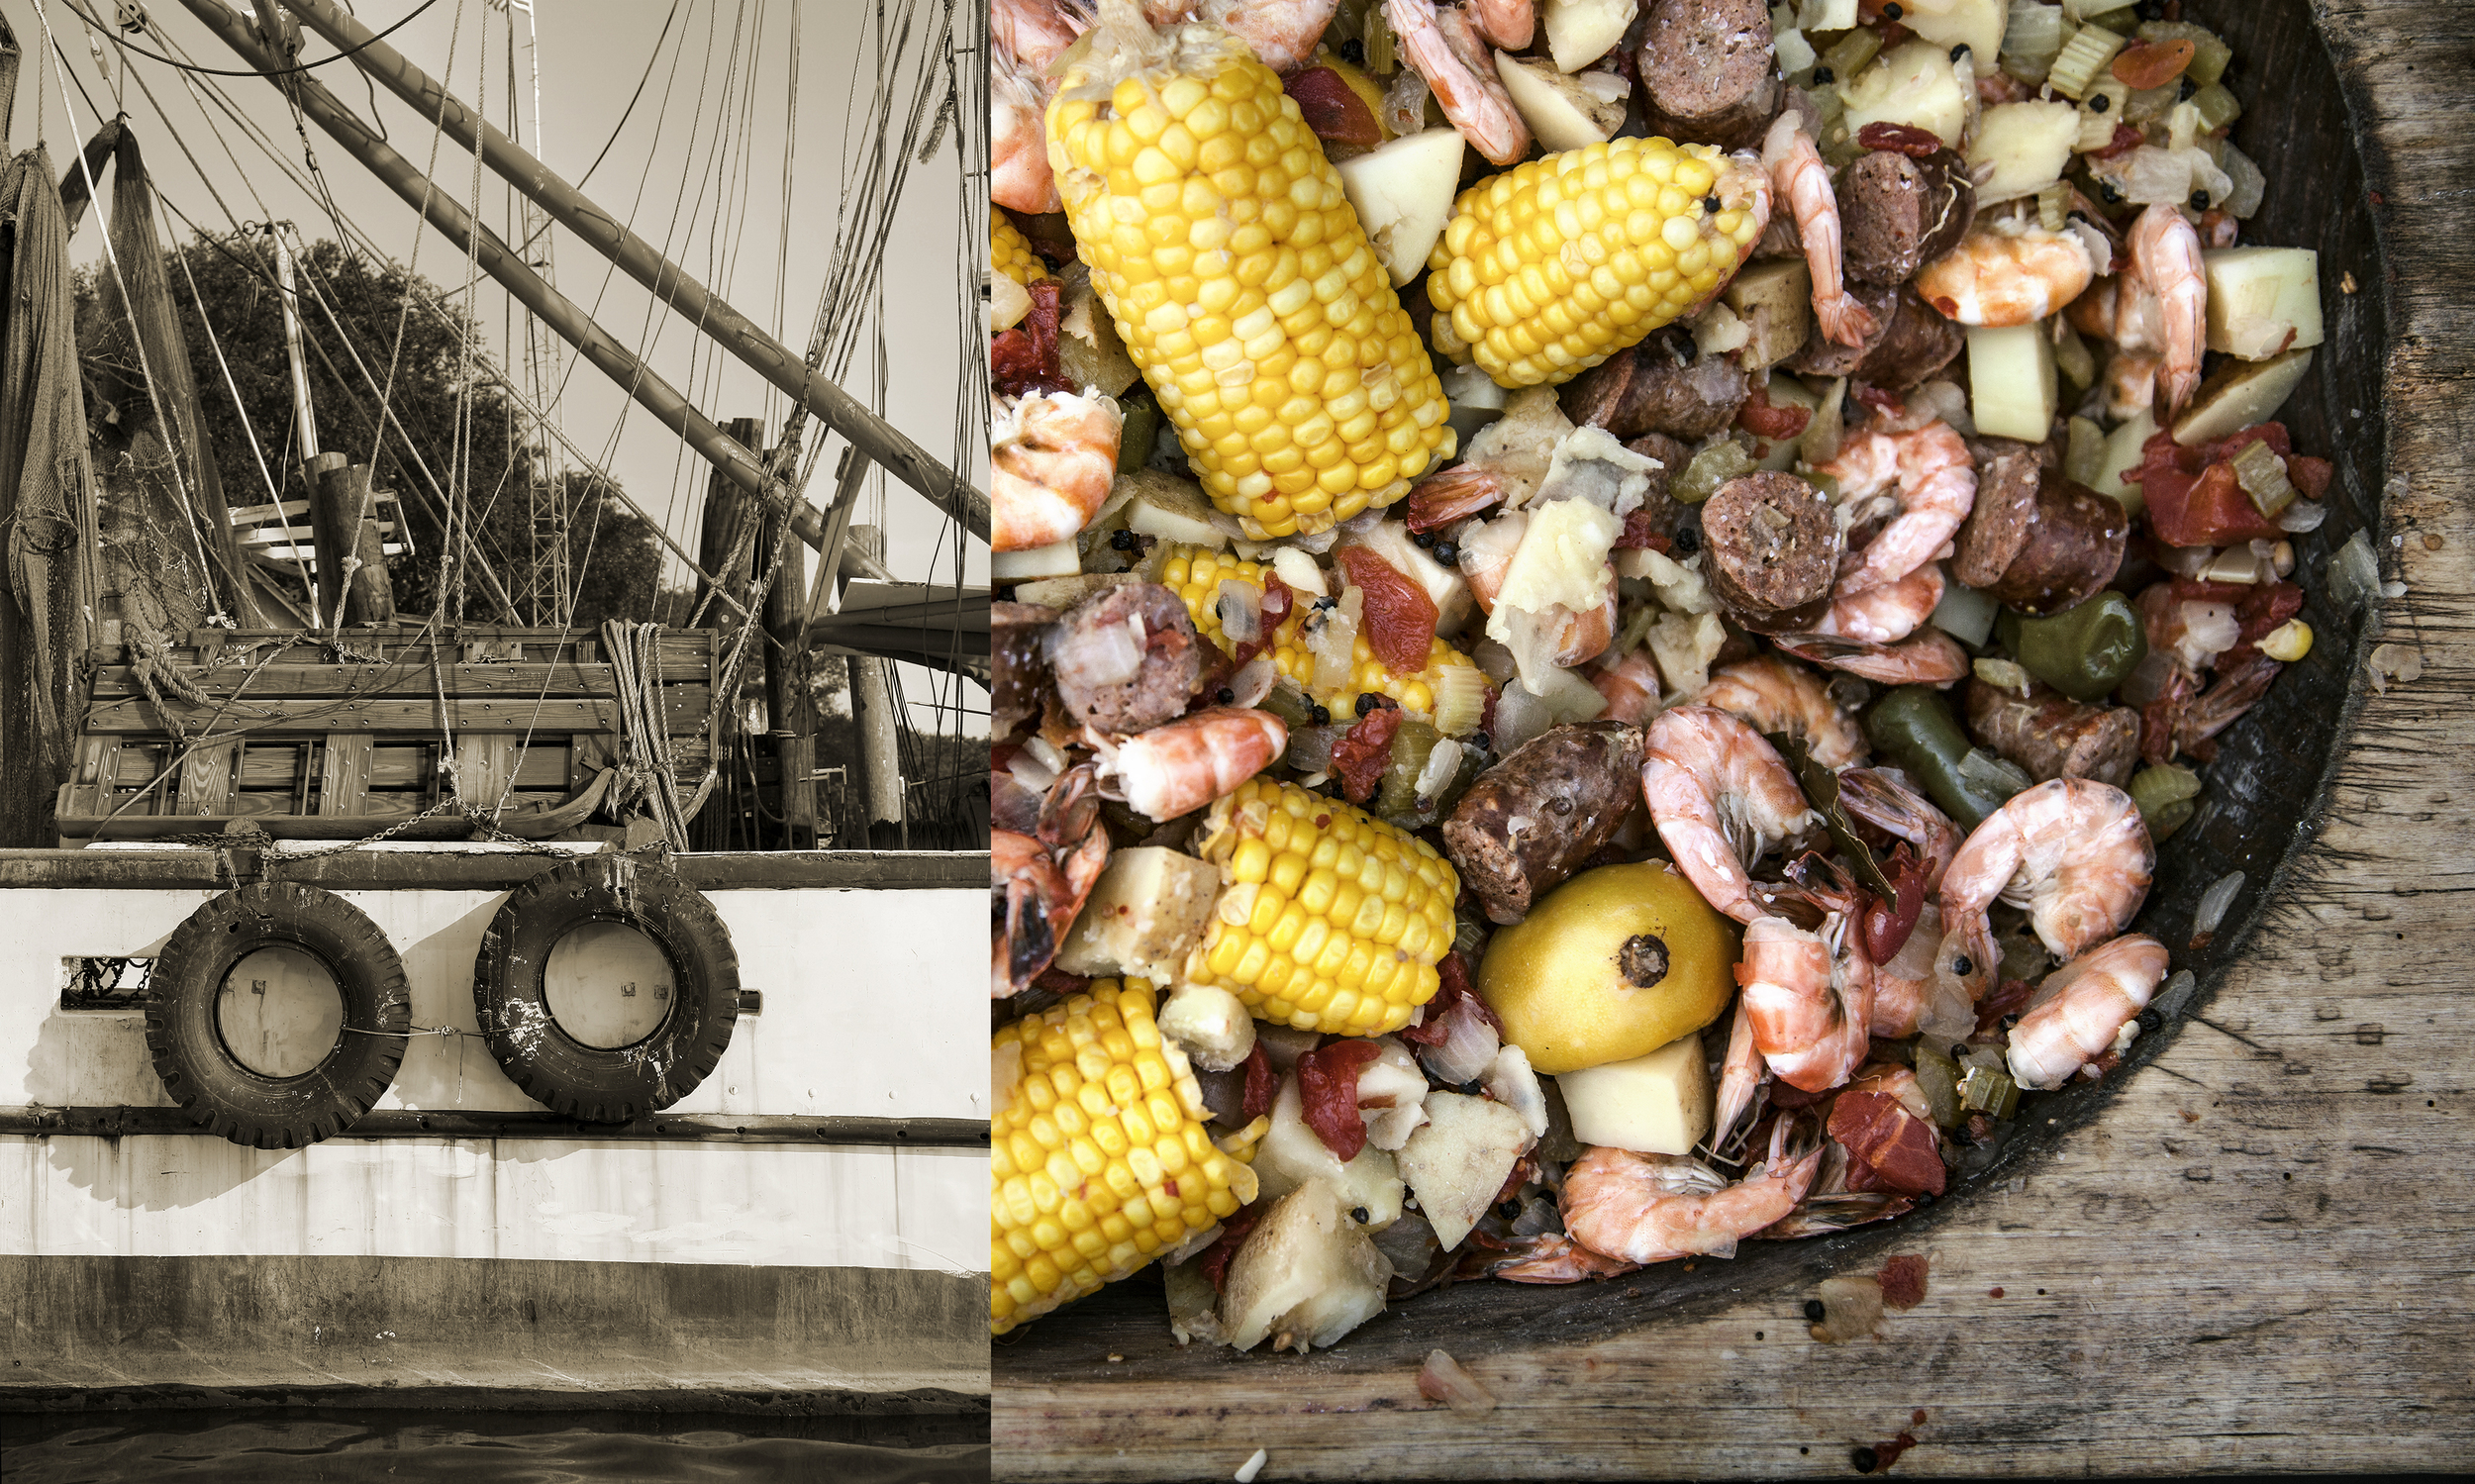 food photography of shrimp boil and shrimp boat